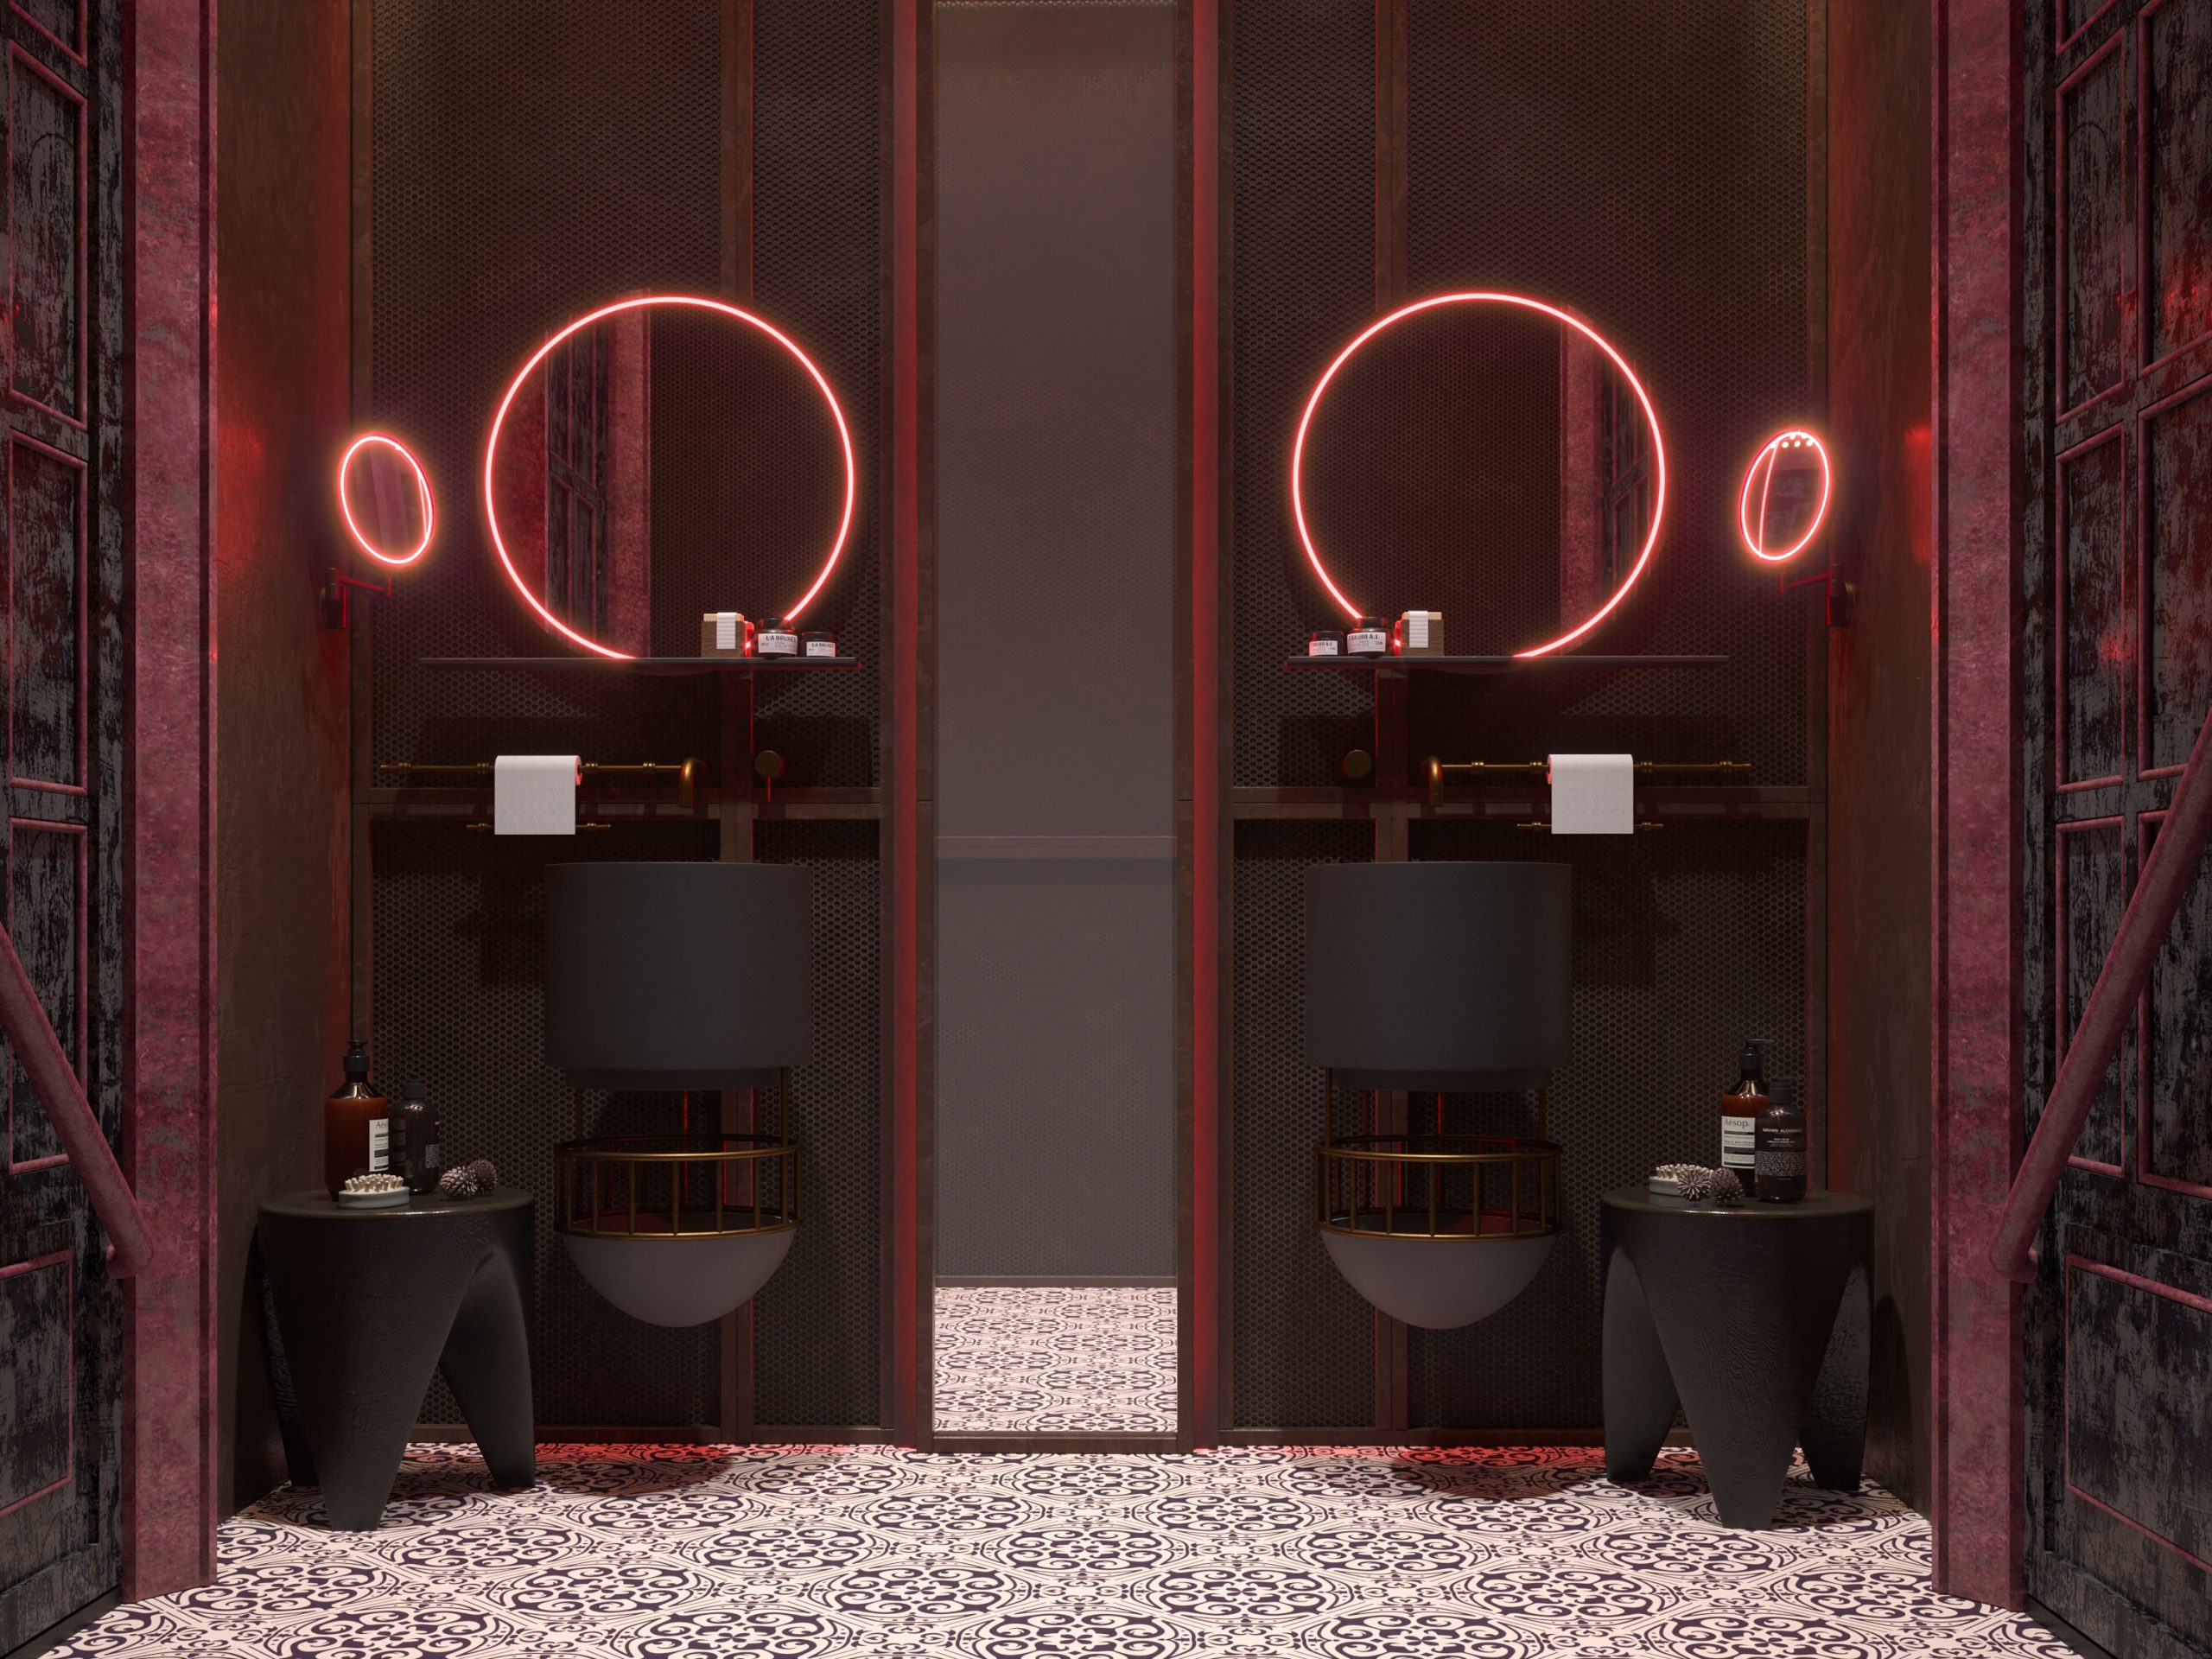 UNIQUE CAFE DESIGN - orne bathroom - red lights - industrial - black 